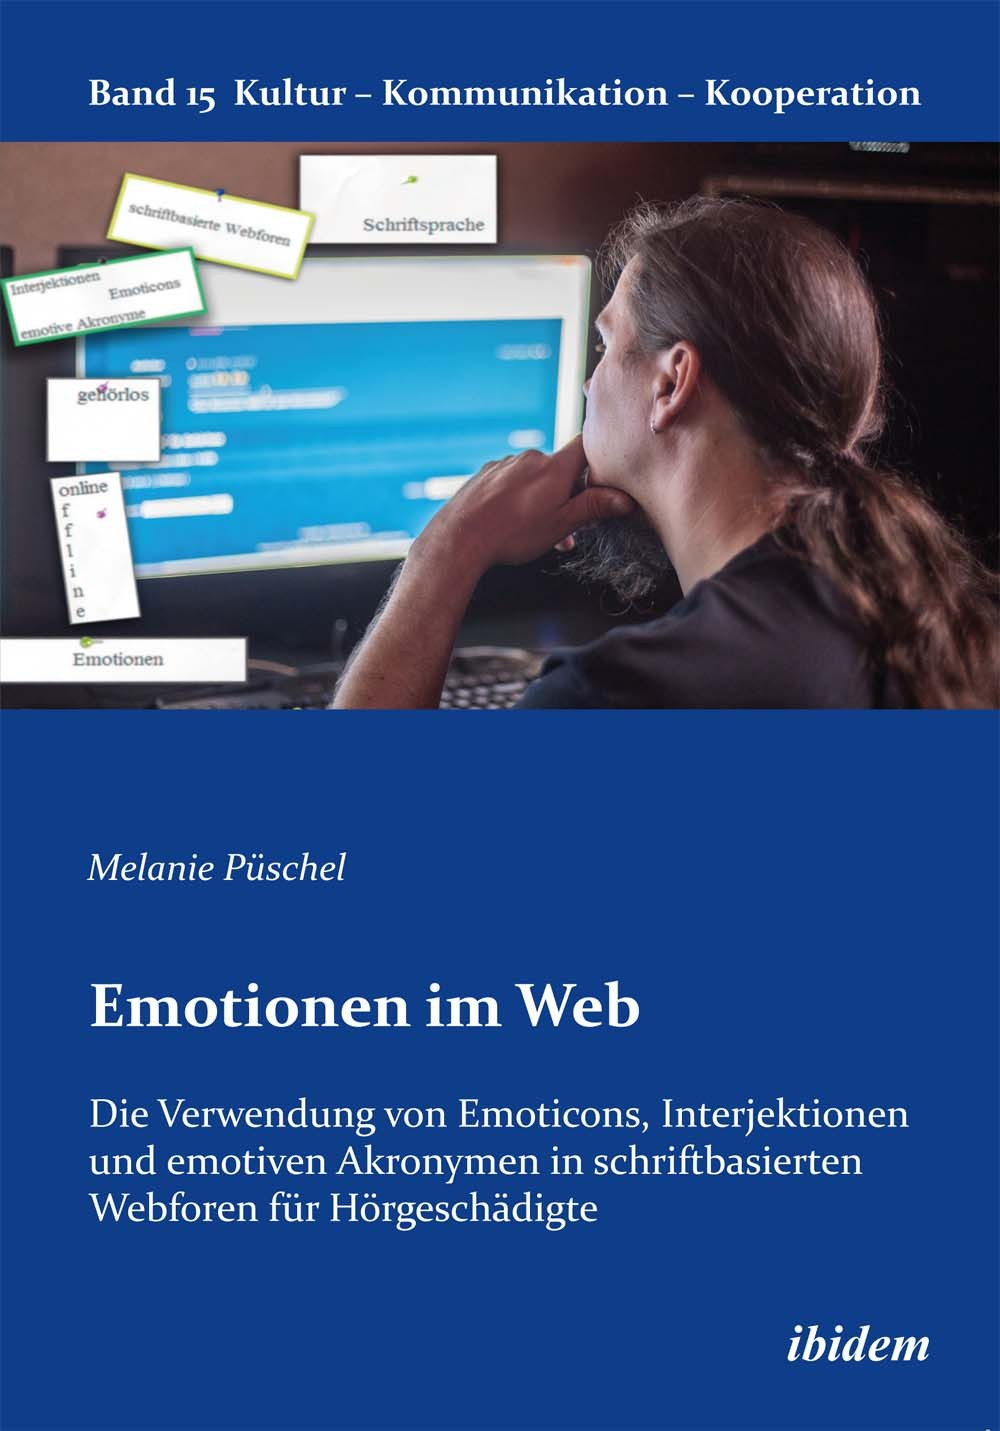 Emotionen im Web: Die Verwendung von Emoticons, Interjektionen und emotiven Akronymen in schriftbasierten Webforen für Hörgeschädigte